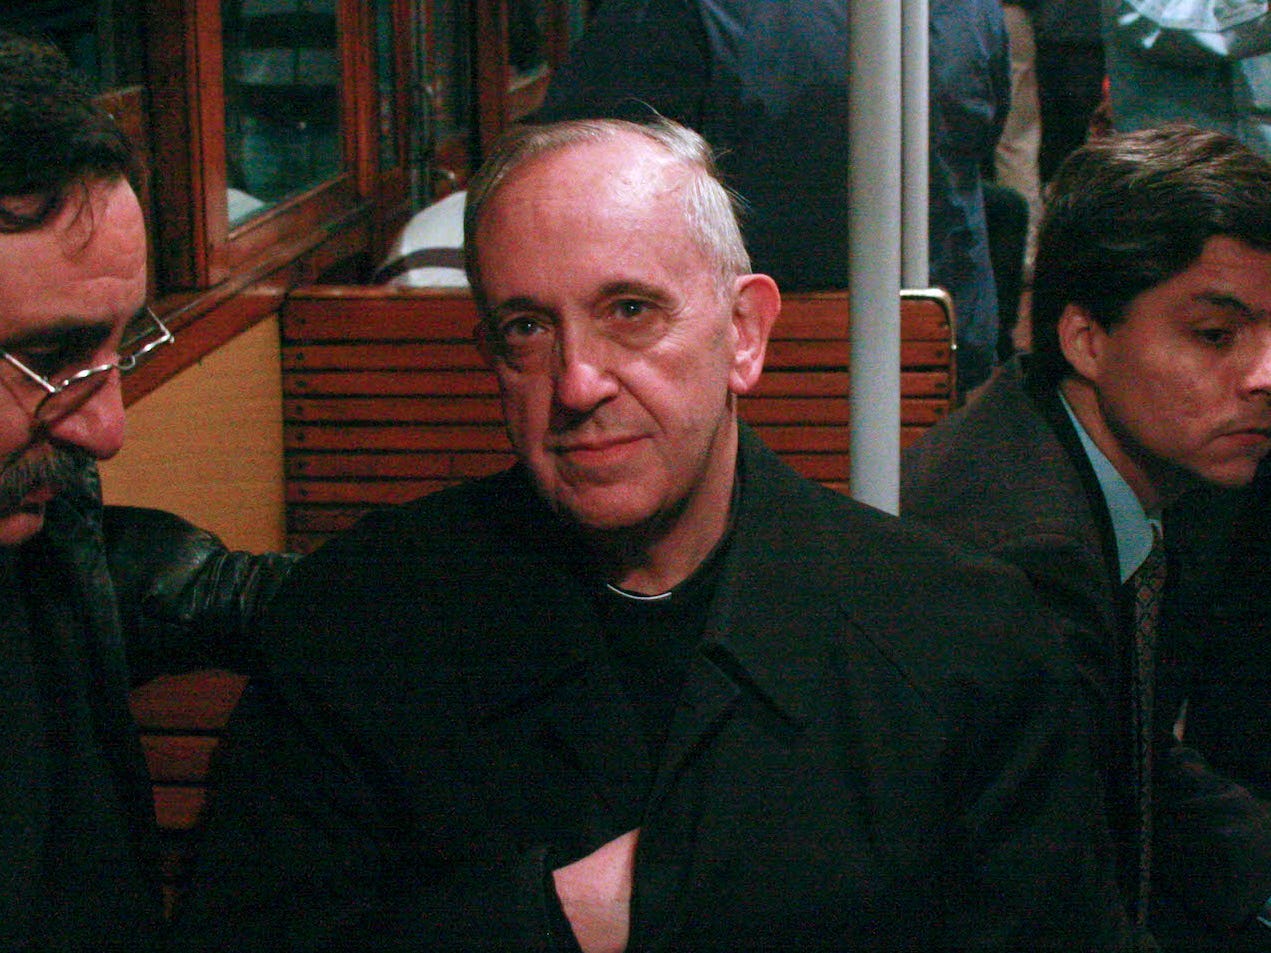 Een bestandsfoto uit 2008 van de Argentijnse kardinaal Jorge Mario Bergoglio, die later paus Franciscus zou worden, in een drukke metro in Argentinië. 